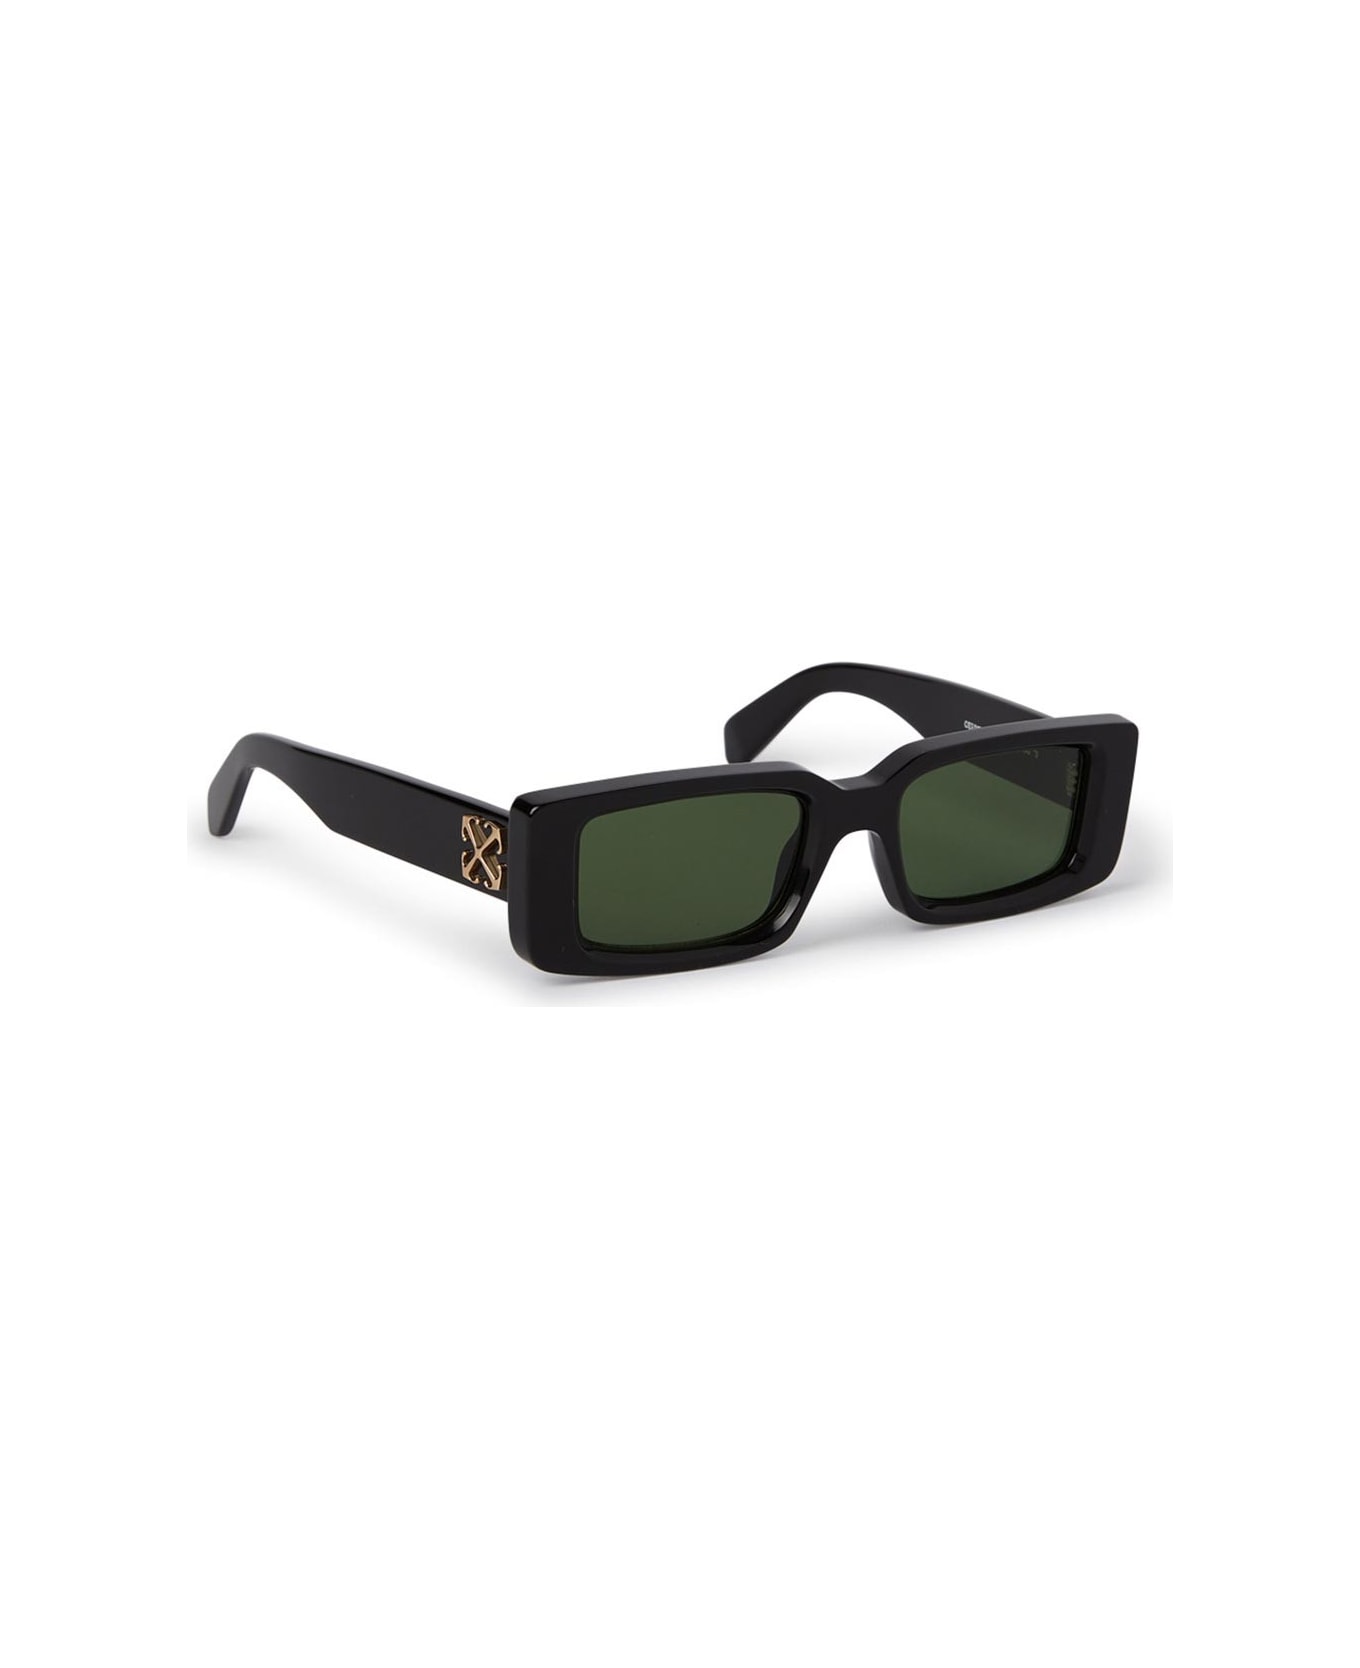 Off-White Sunglasses - Nero/Verde